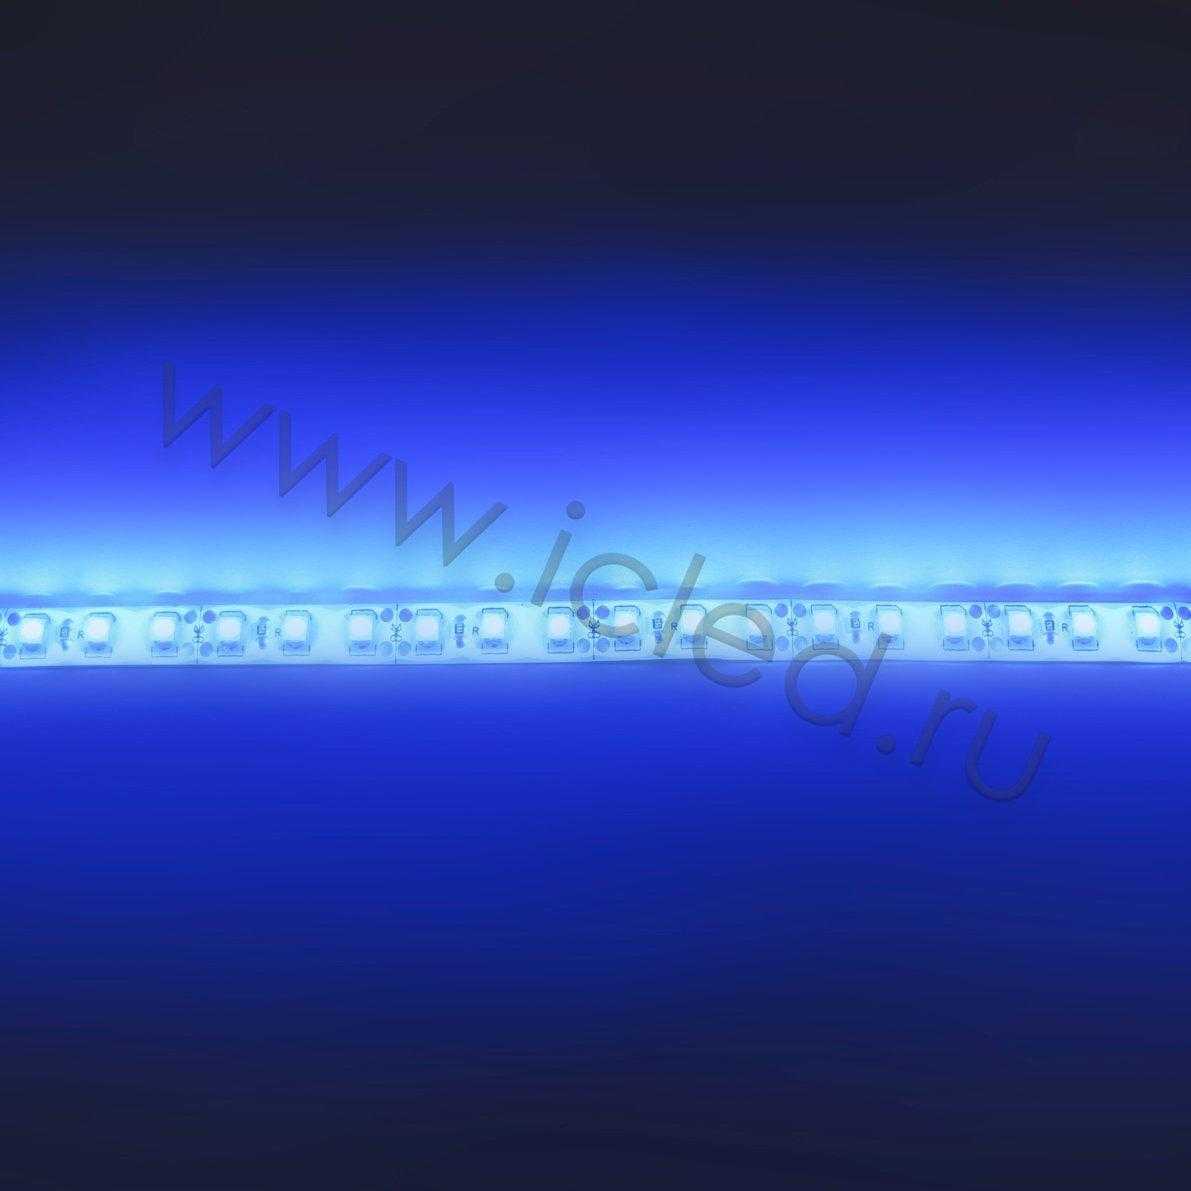 Влагозащищенные светодиодные ленты Светодиодная лента Standart class, 3528, 120led/m, Blue, 12V, IP65 Icled